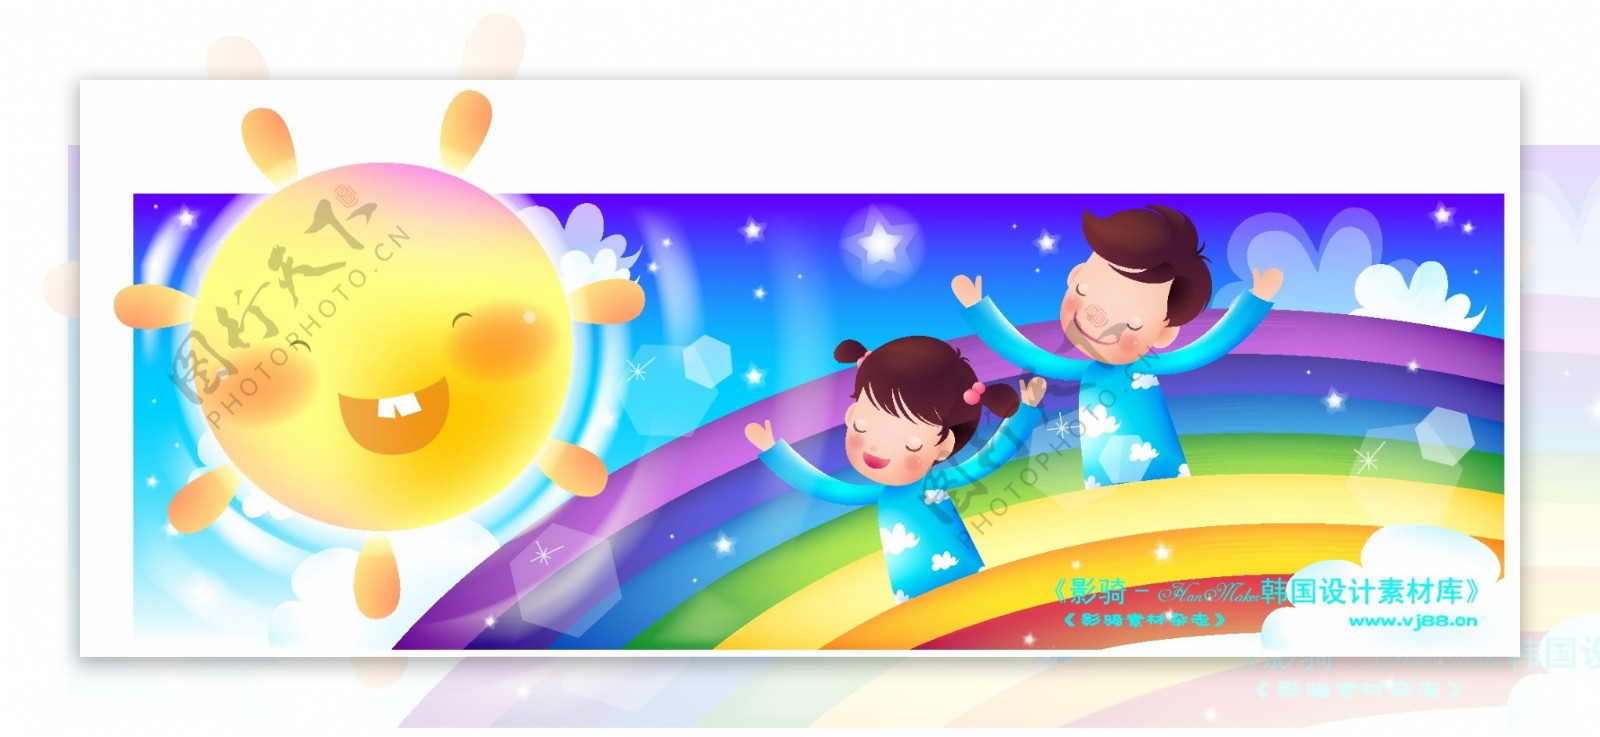 卡通儿童主题插画矢量素材矢量图片HanMaker韩国设计素材库